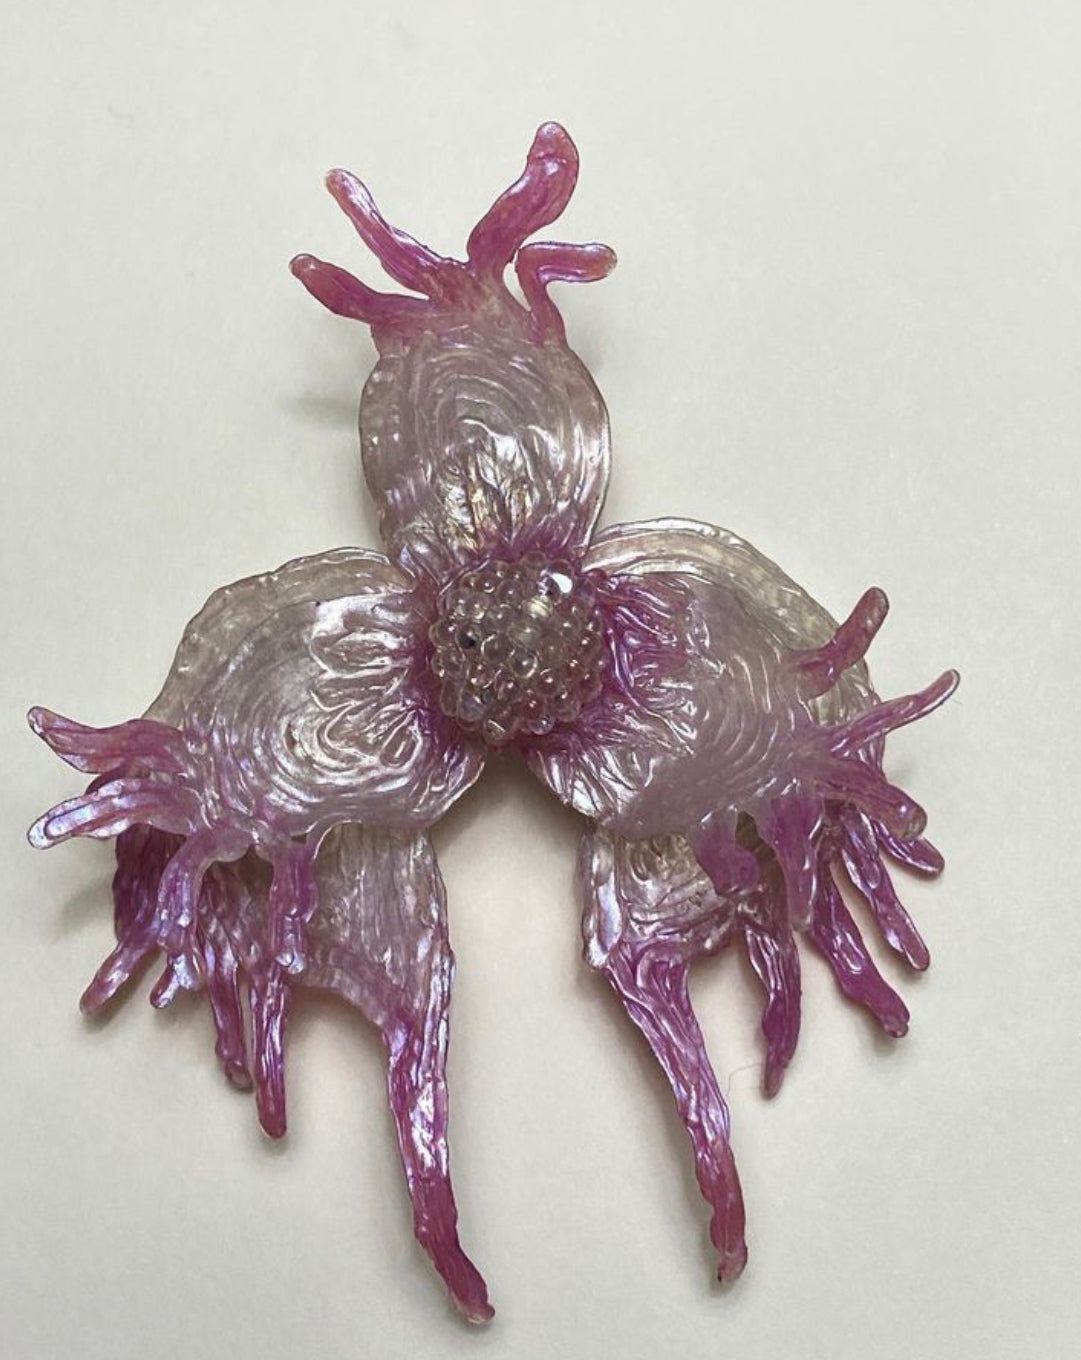 Edwin Ramirez - “Marine Orchid” earrings